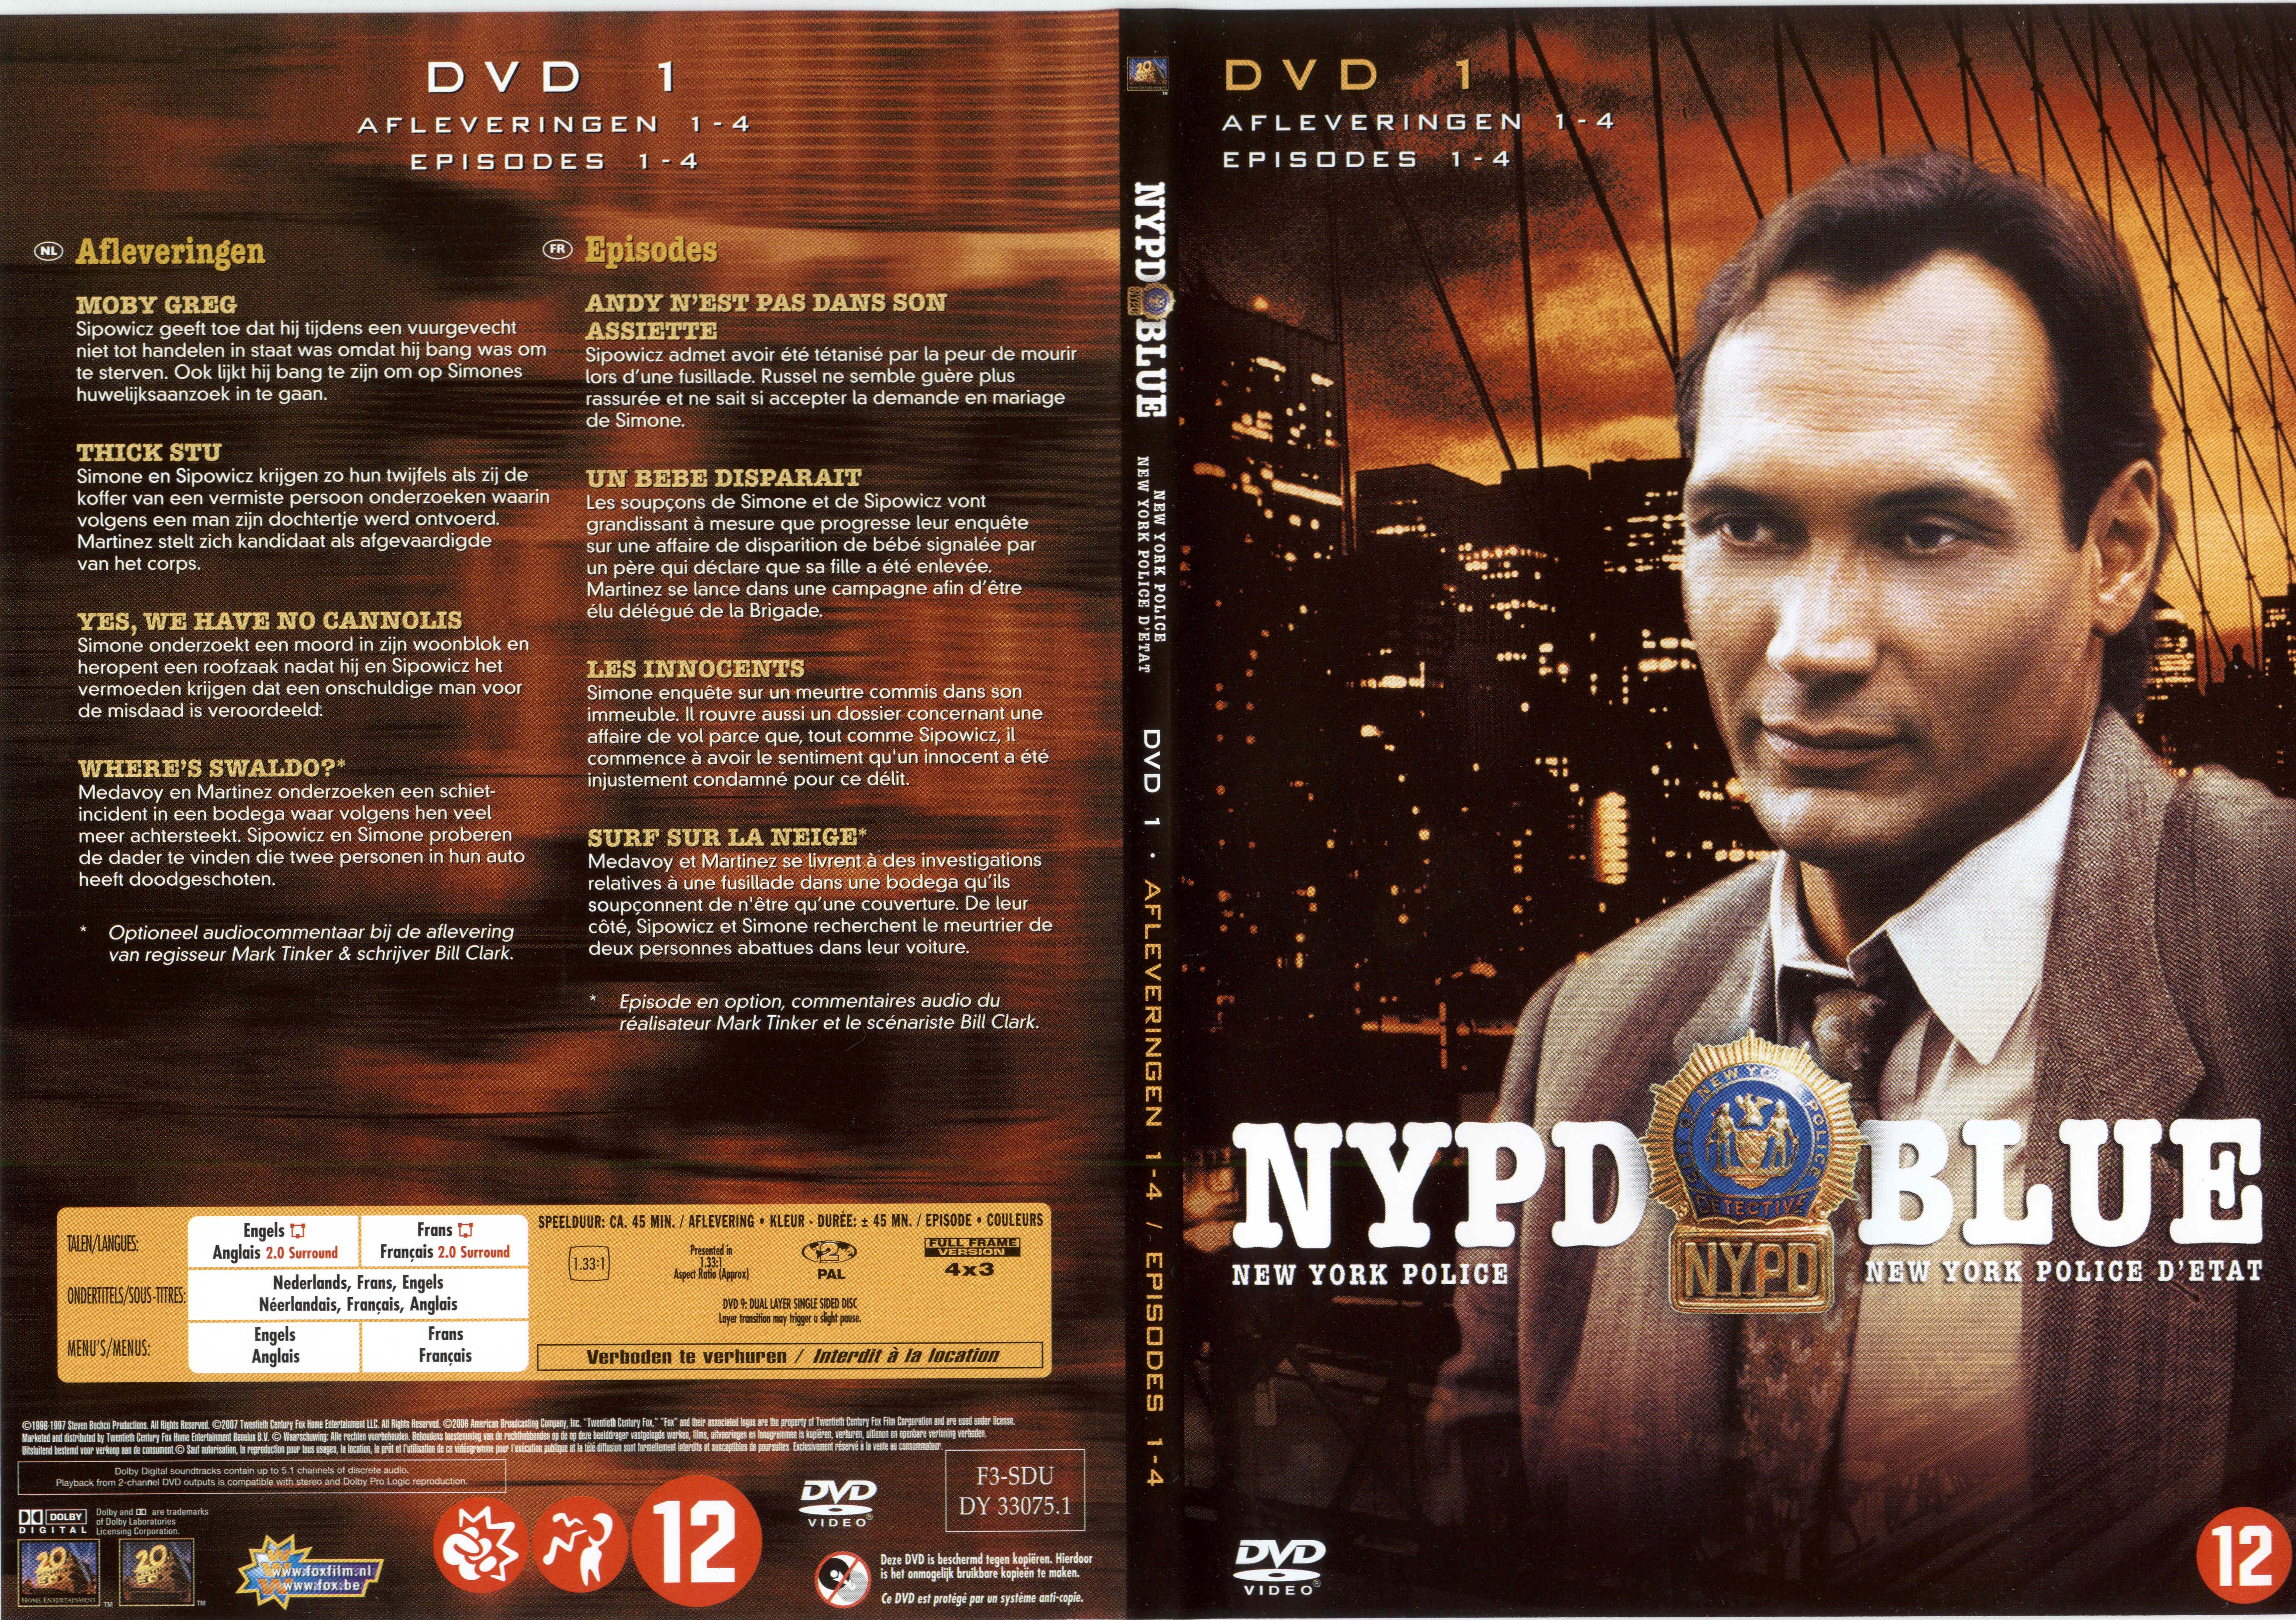 Jaquette DVD NYPD Blue saison 04 dvd 01